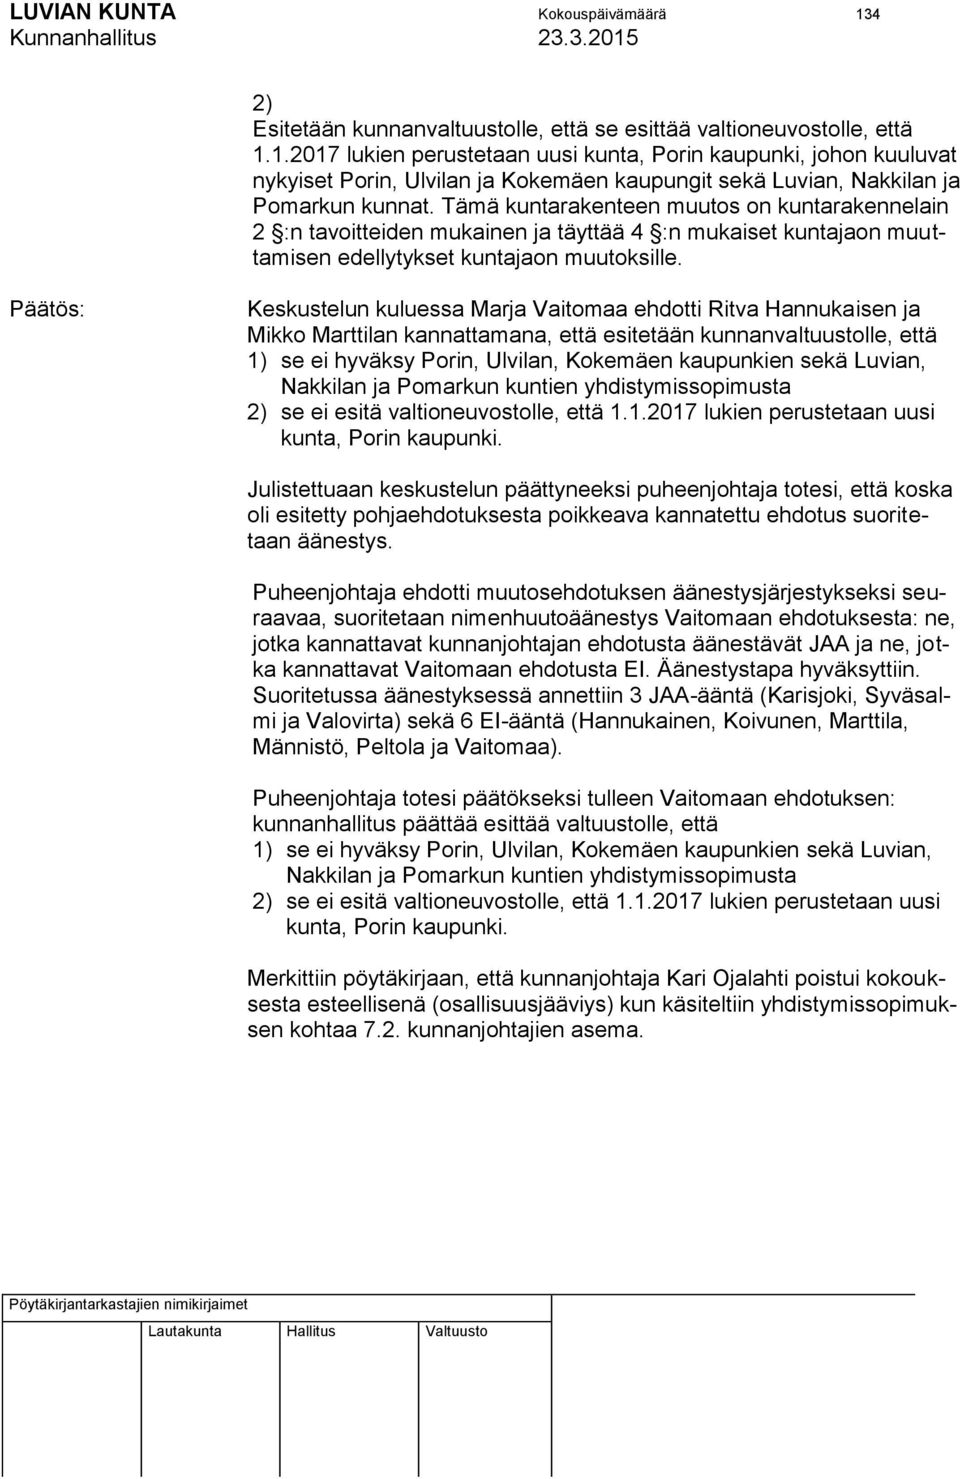 Keskustelun kuluessa Marja Vaitomaa ehdotti Ritva Hannukaisen ja Mikko Marttilan kannattamana, että esitetään kunnanvaltuustolle, että 1) se ei hyväksy Porin, Ulvilan, Kokemäen kaupunkien sekä